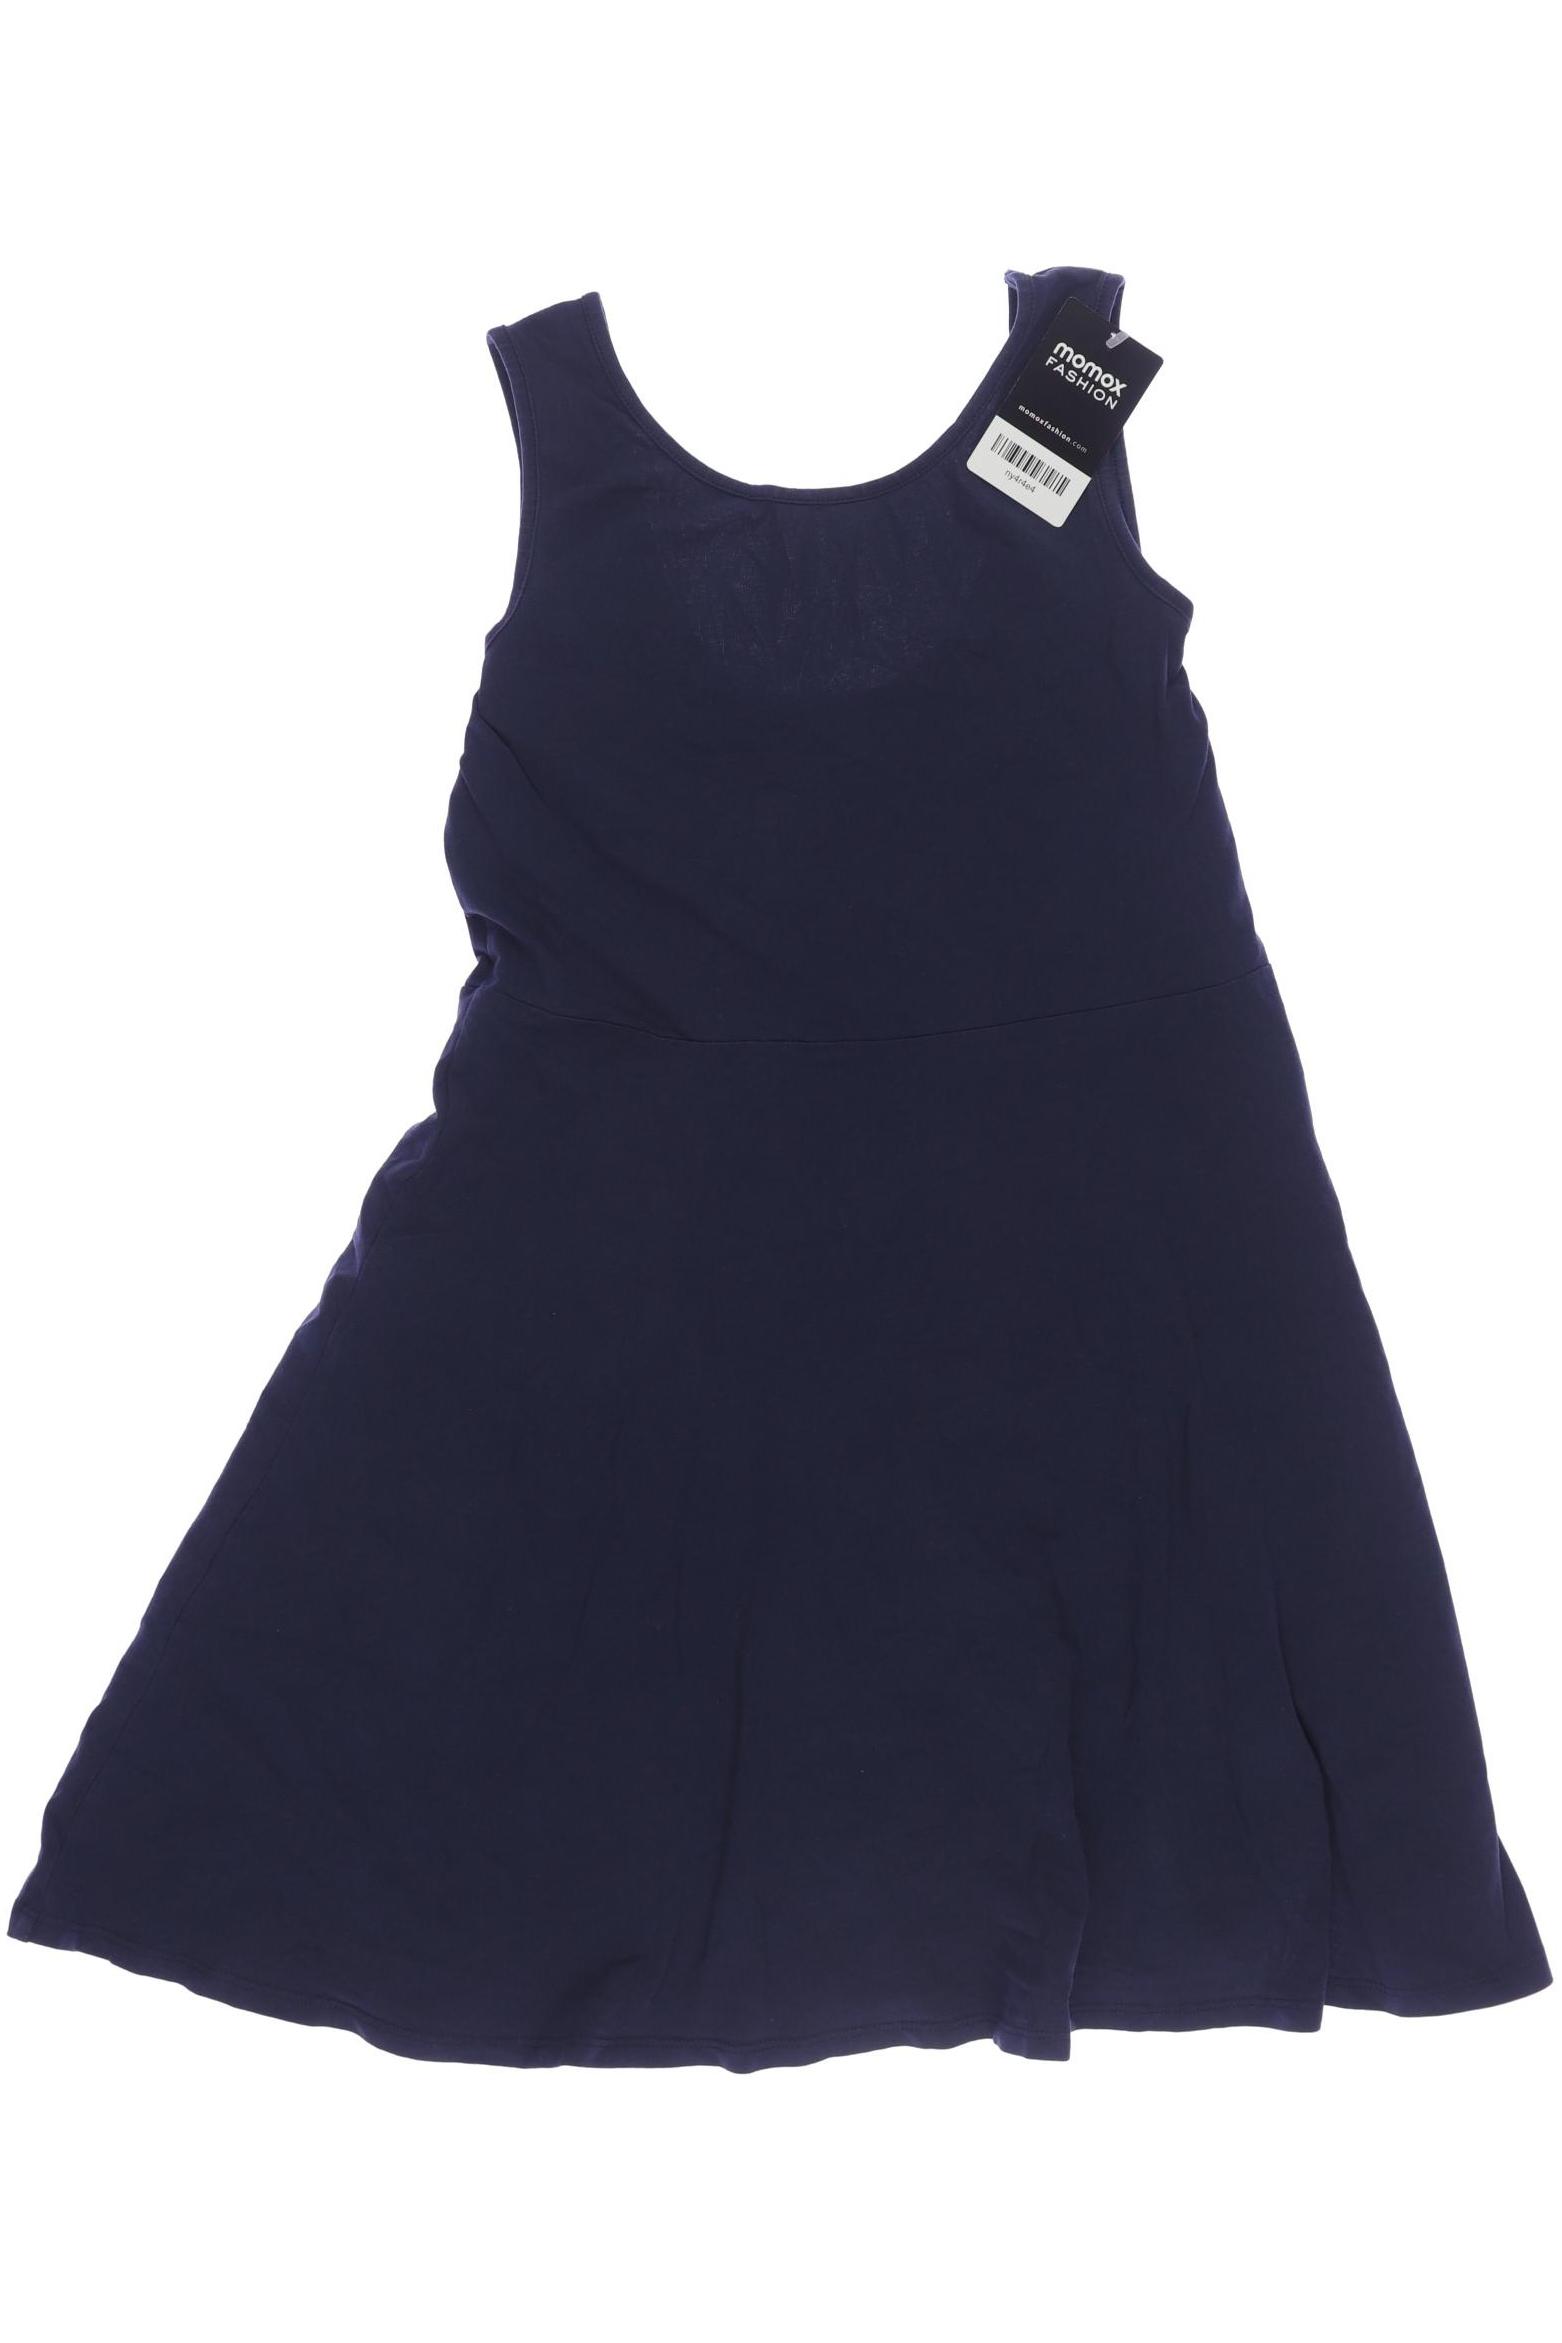 Manguun Damen Kleid, marineblau, Gr. 158 von Manguun